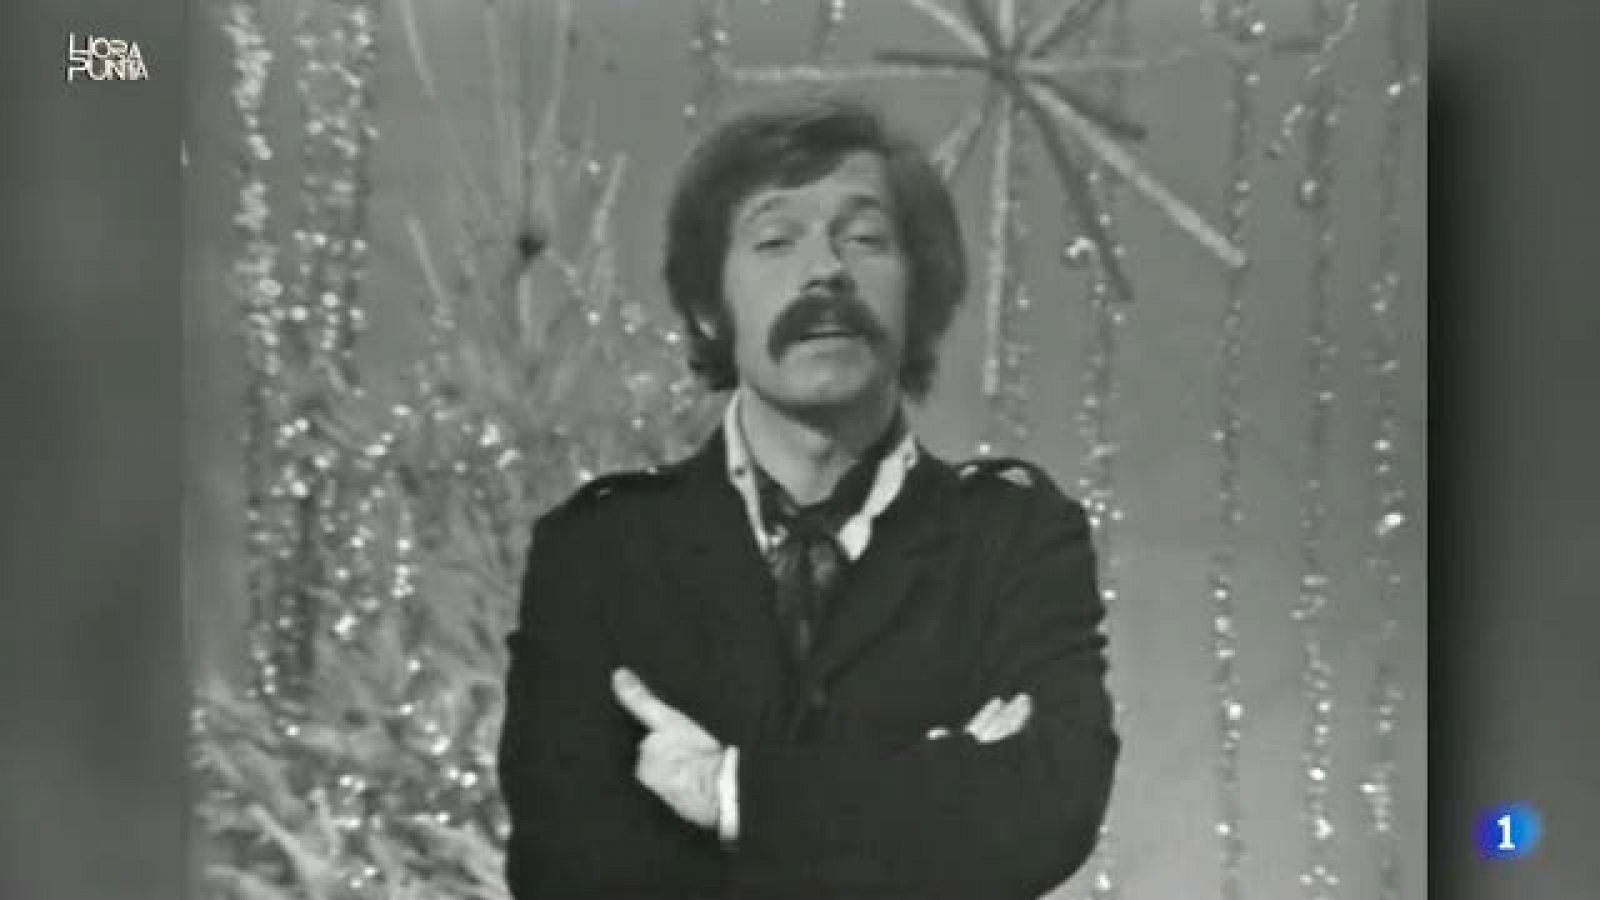 Hora Punta - 'Último Grito' el primer programa de Jose María Iñigo en TVE en 1968